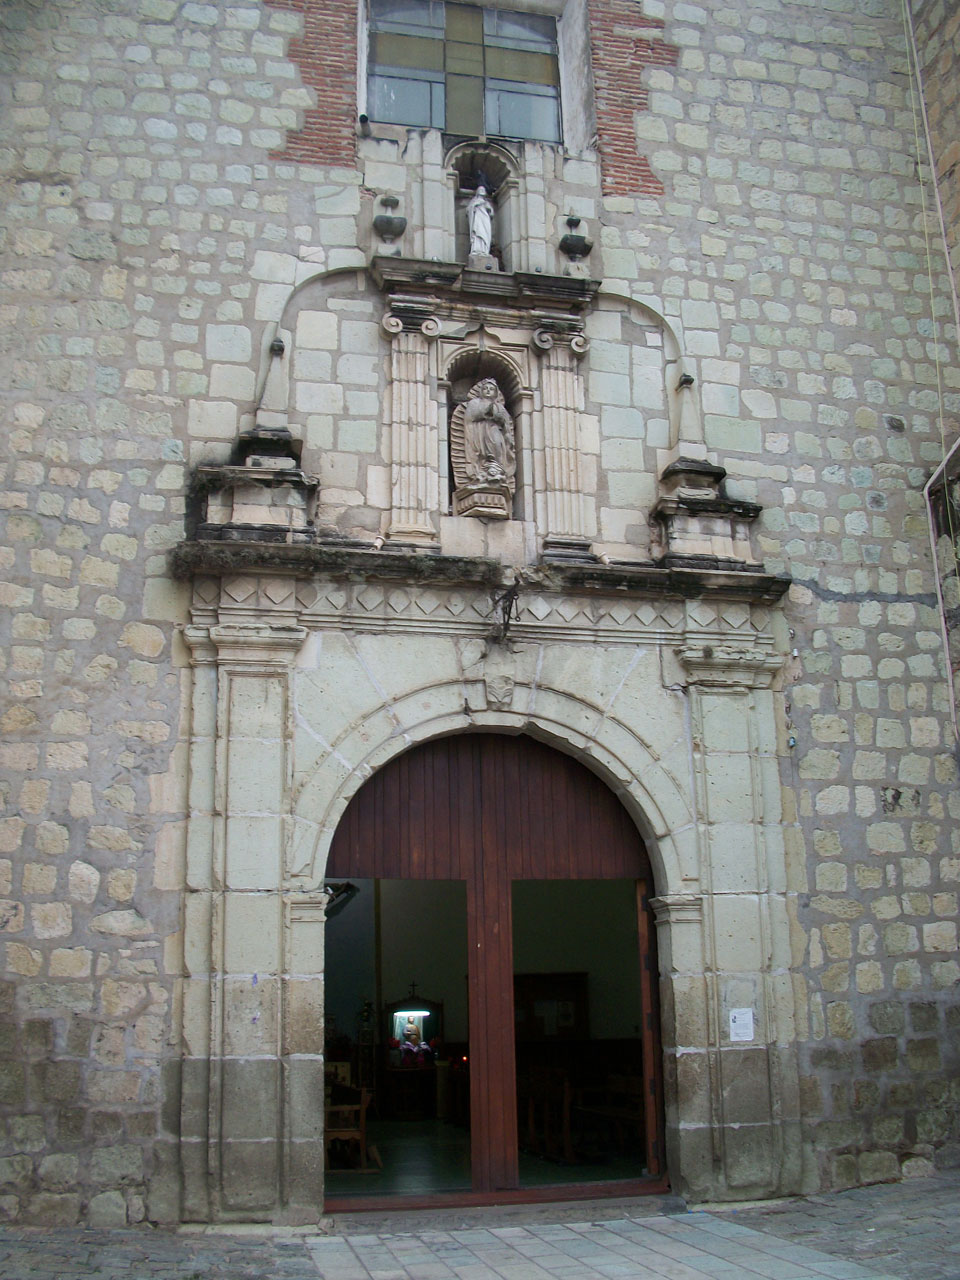 Gate to a church.